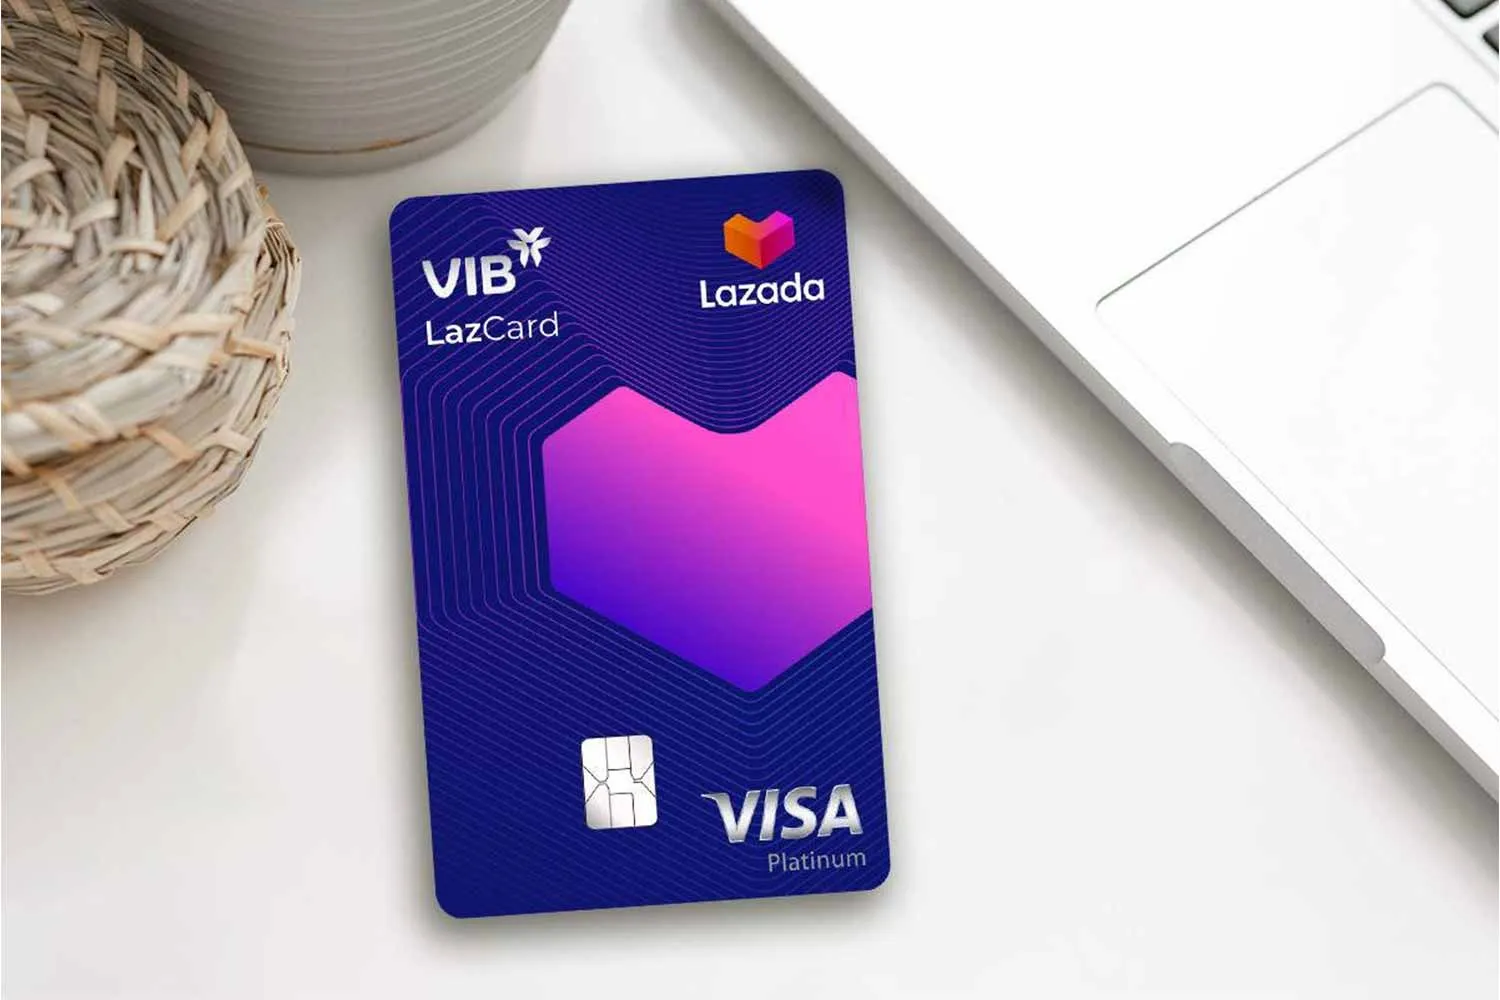 Nhận nhiều ưu đãi với thẻ Visa VIB LazCard khi mua sắm trực tuyến